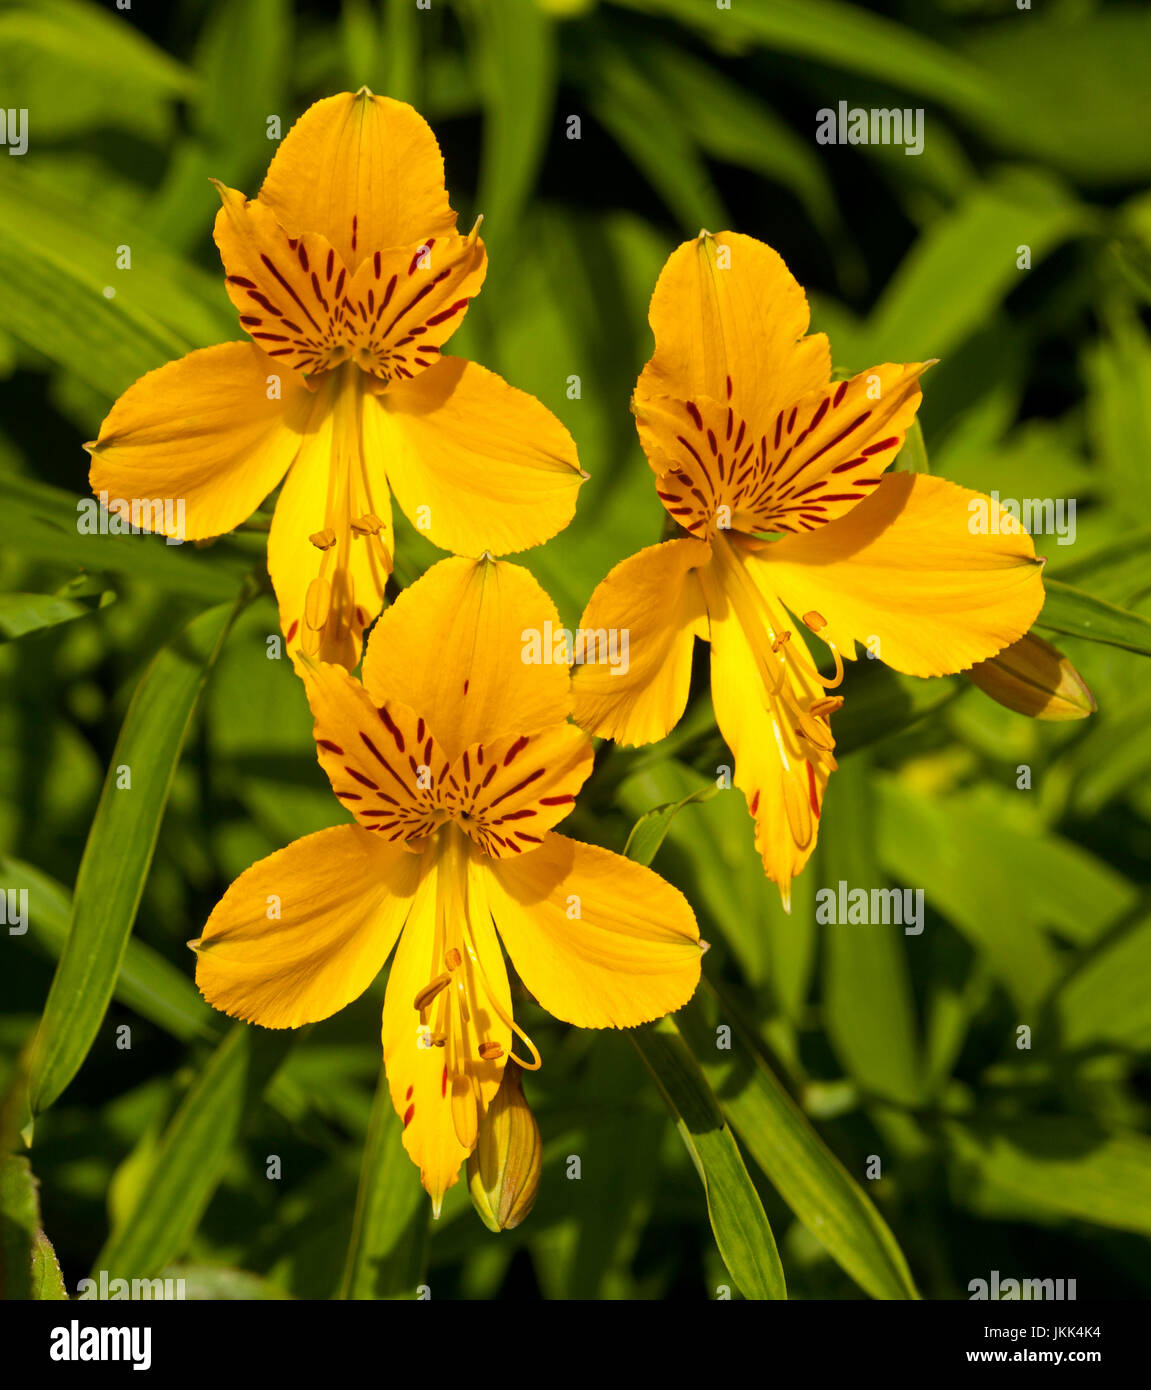 Groupe de couleurs des fleurs jaune or de l'Alstroemeria, péruvienne / Princess lily, contre l'arrière-plan de feuilles vert clair Banque D'Images